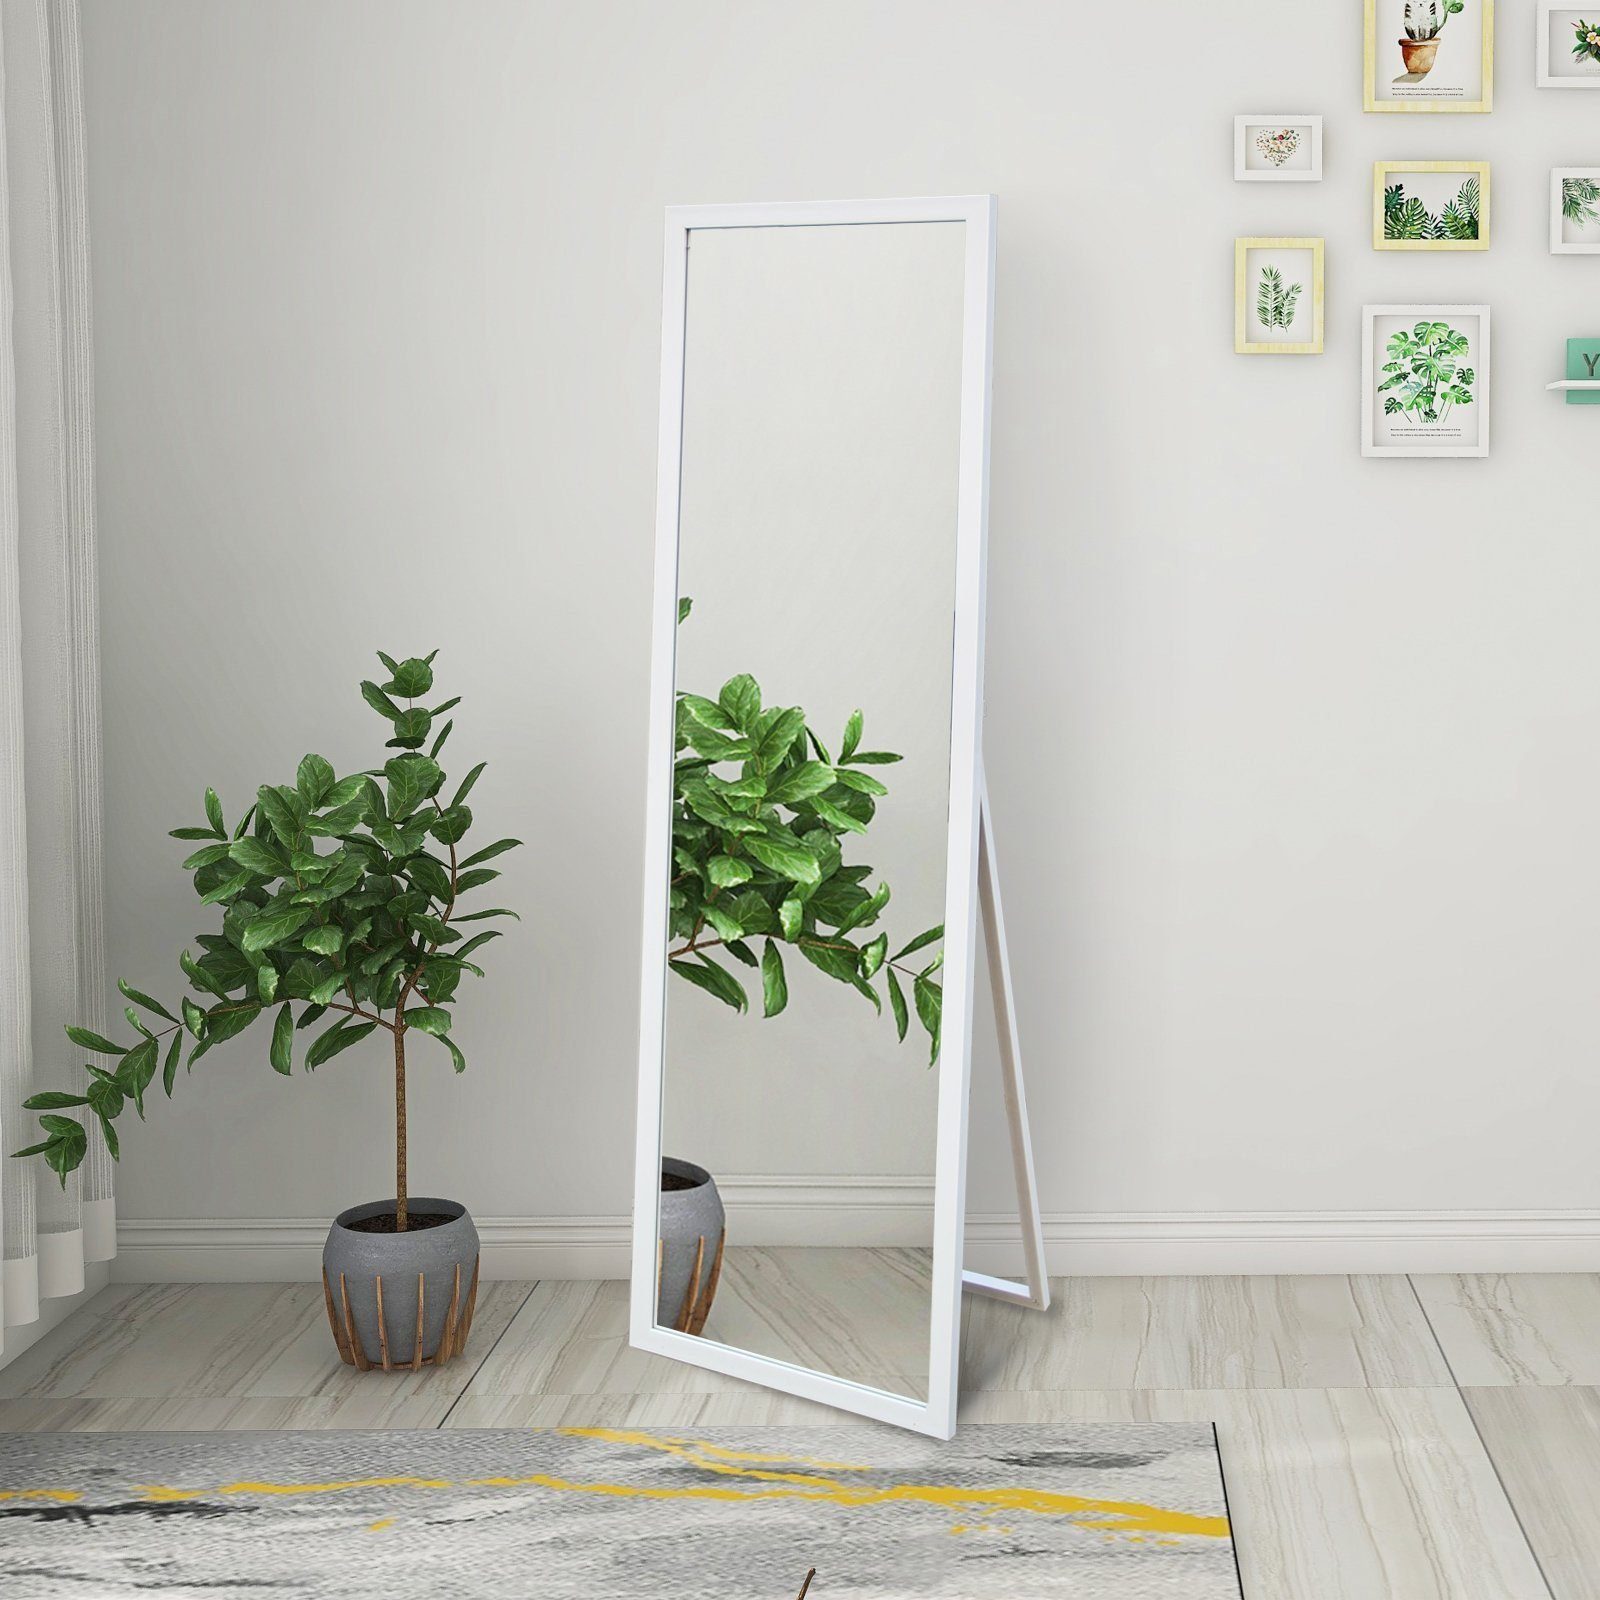 SOFTWEARY Standspiegel »Ganzkörperspiegel mit Holzrahmen und Haken, HD  Wandspiegel, Ankleidespiegel, kippbar, 140x50 cm« online kaufen | OTTO